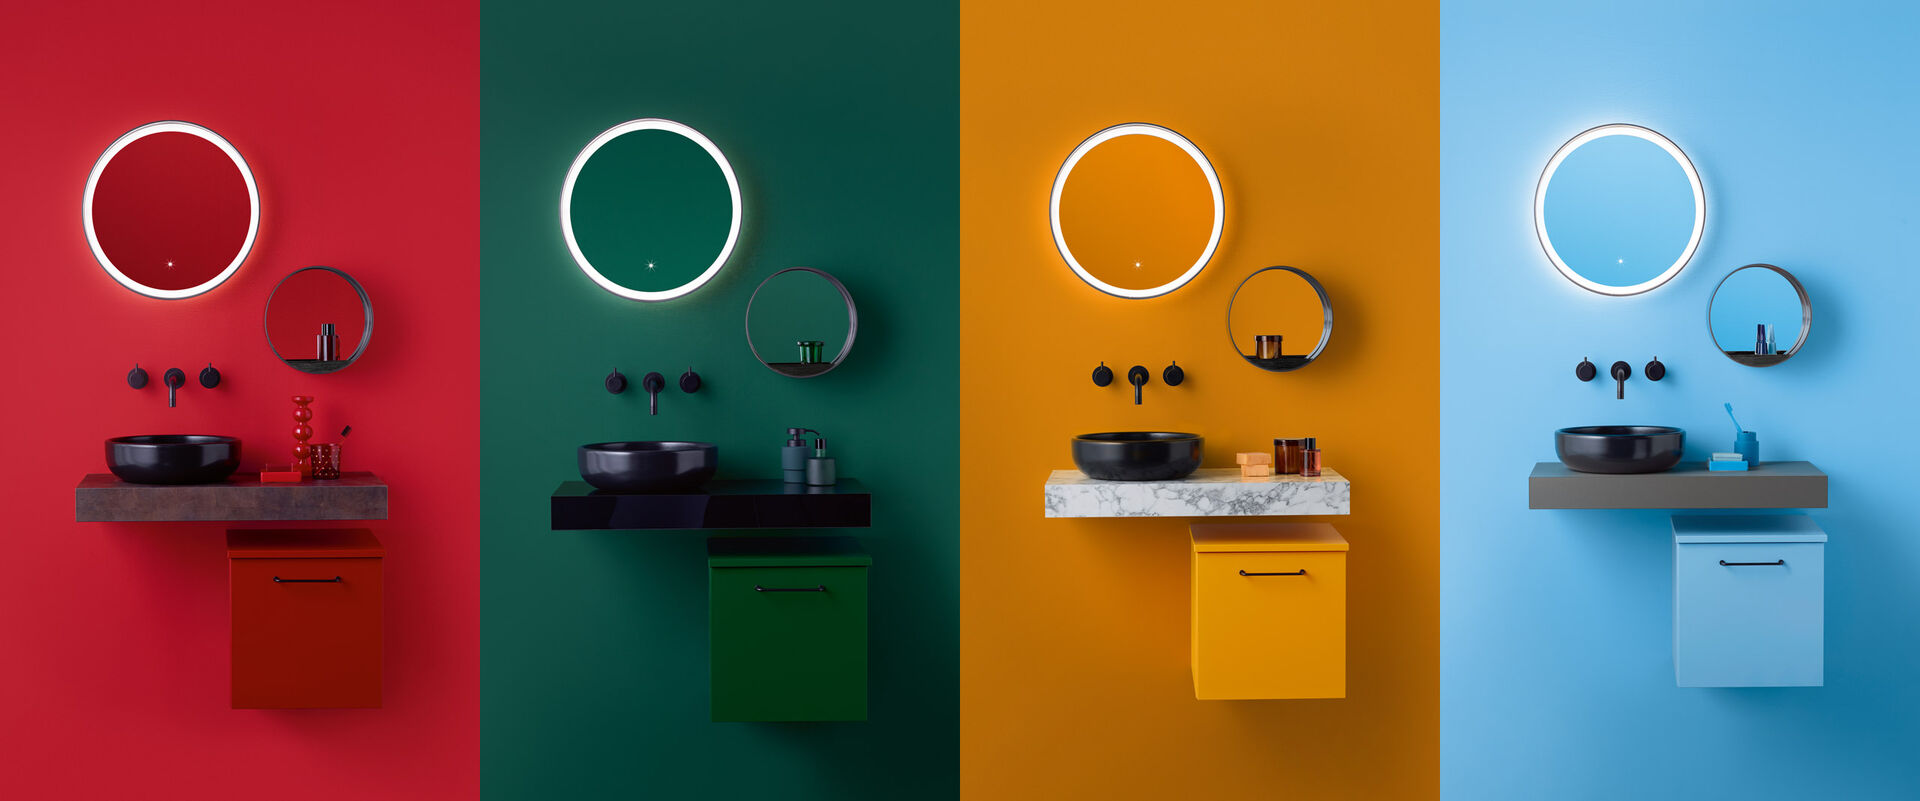 Bildcollage aus 4 gleichen Mini-Waschplätzen mit Badmöbeln Sys30 von burgbad in rot, grün, orange und blau nebeneinander gestellt.